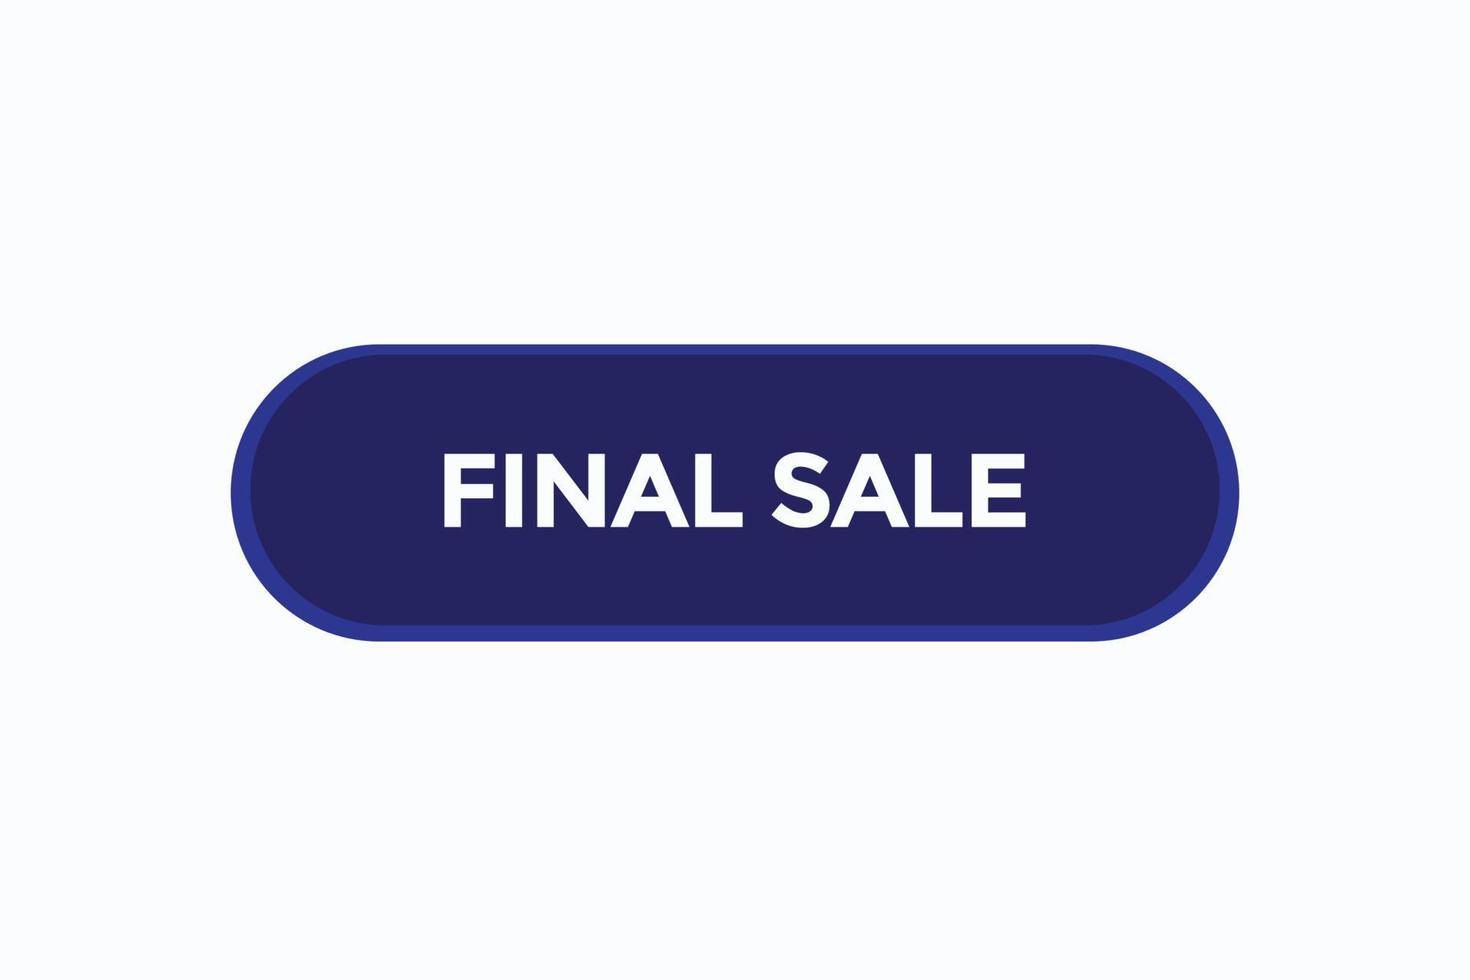 finale vendita vectors.sign etichetta bolla discorso finale vendita vettore